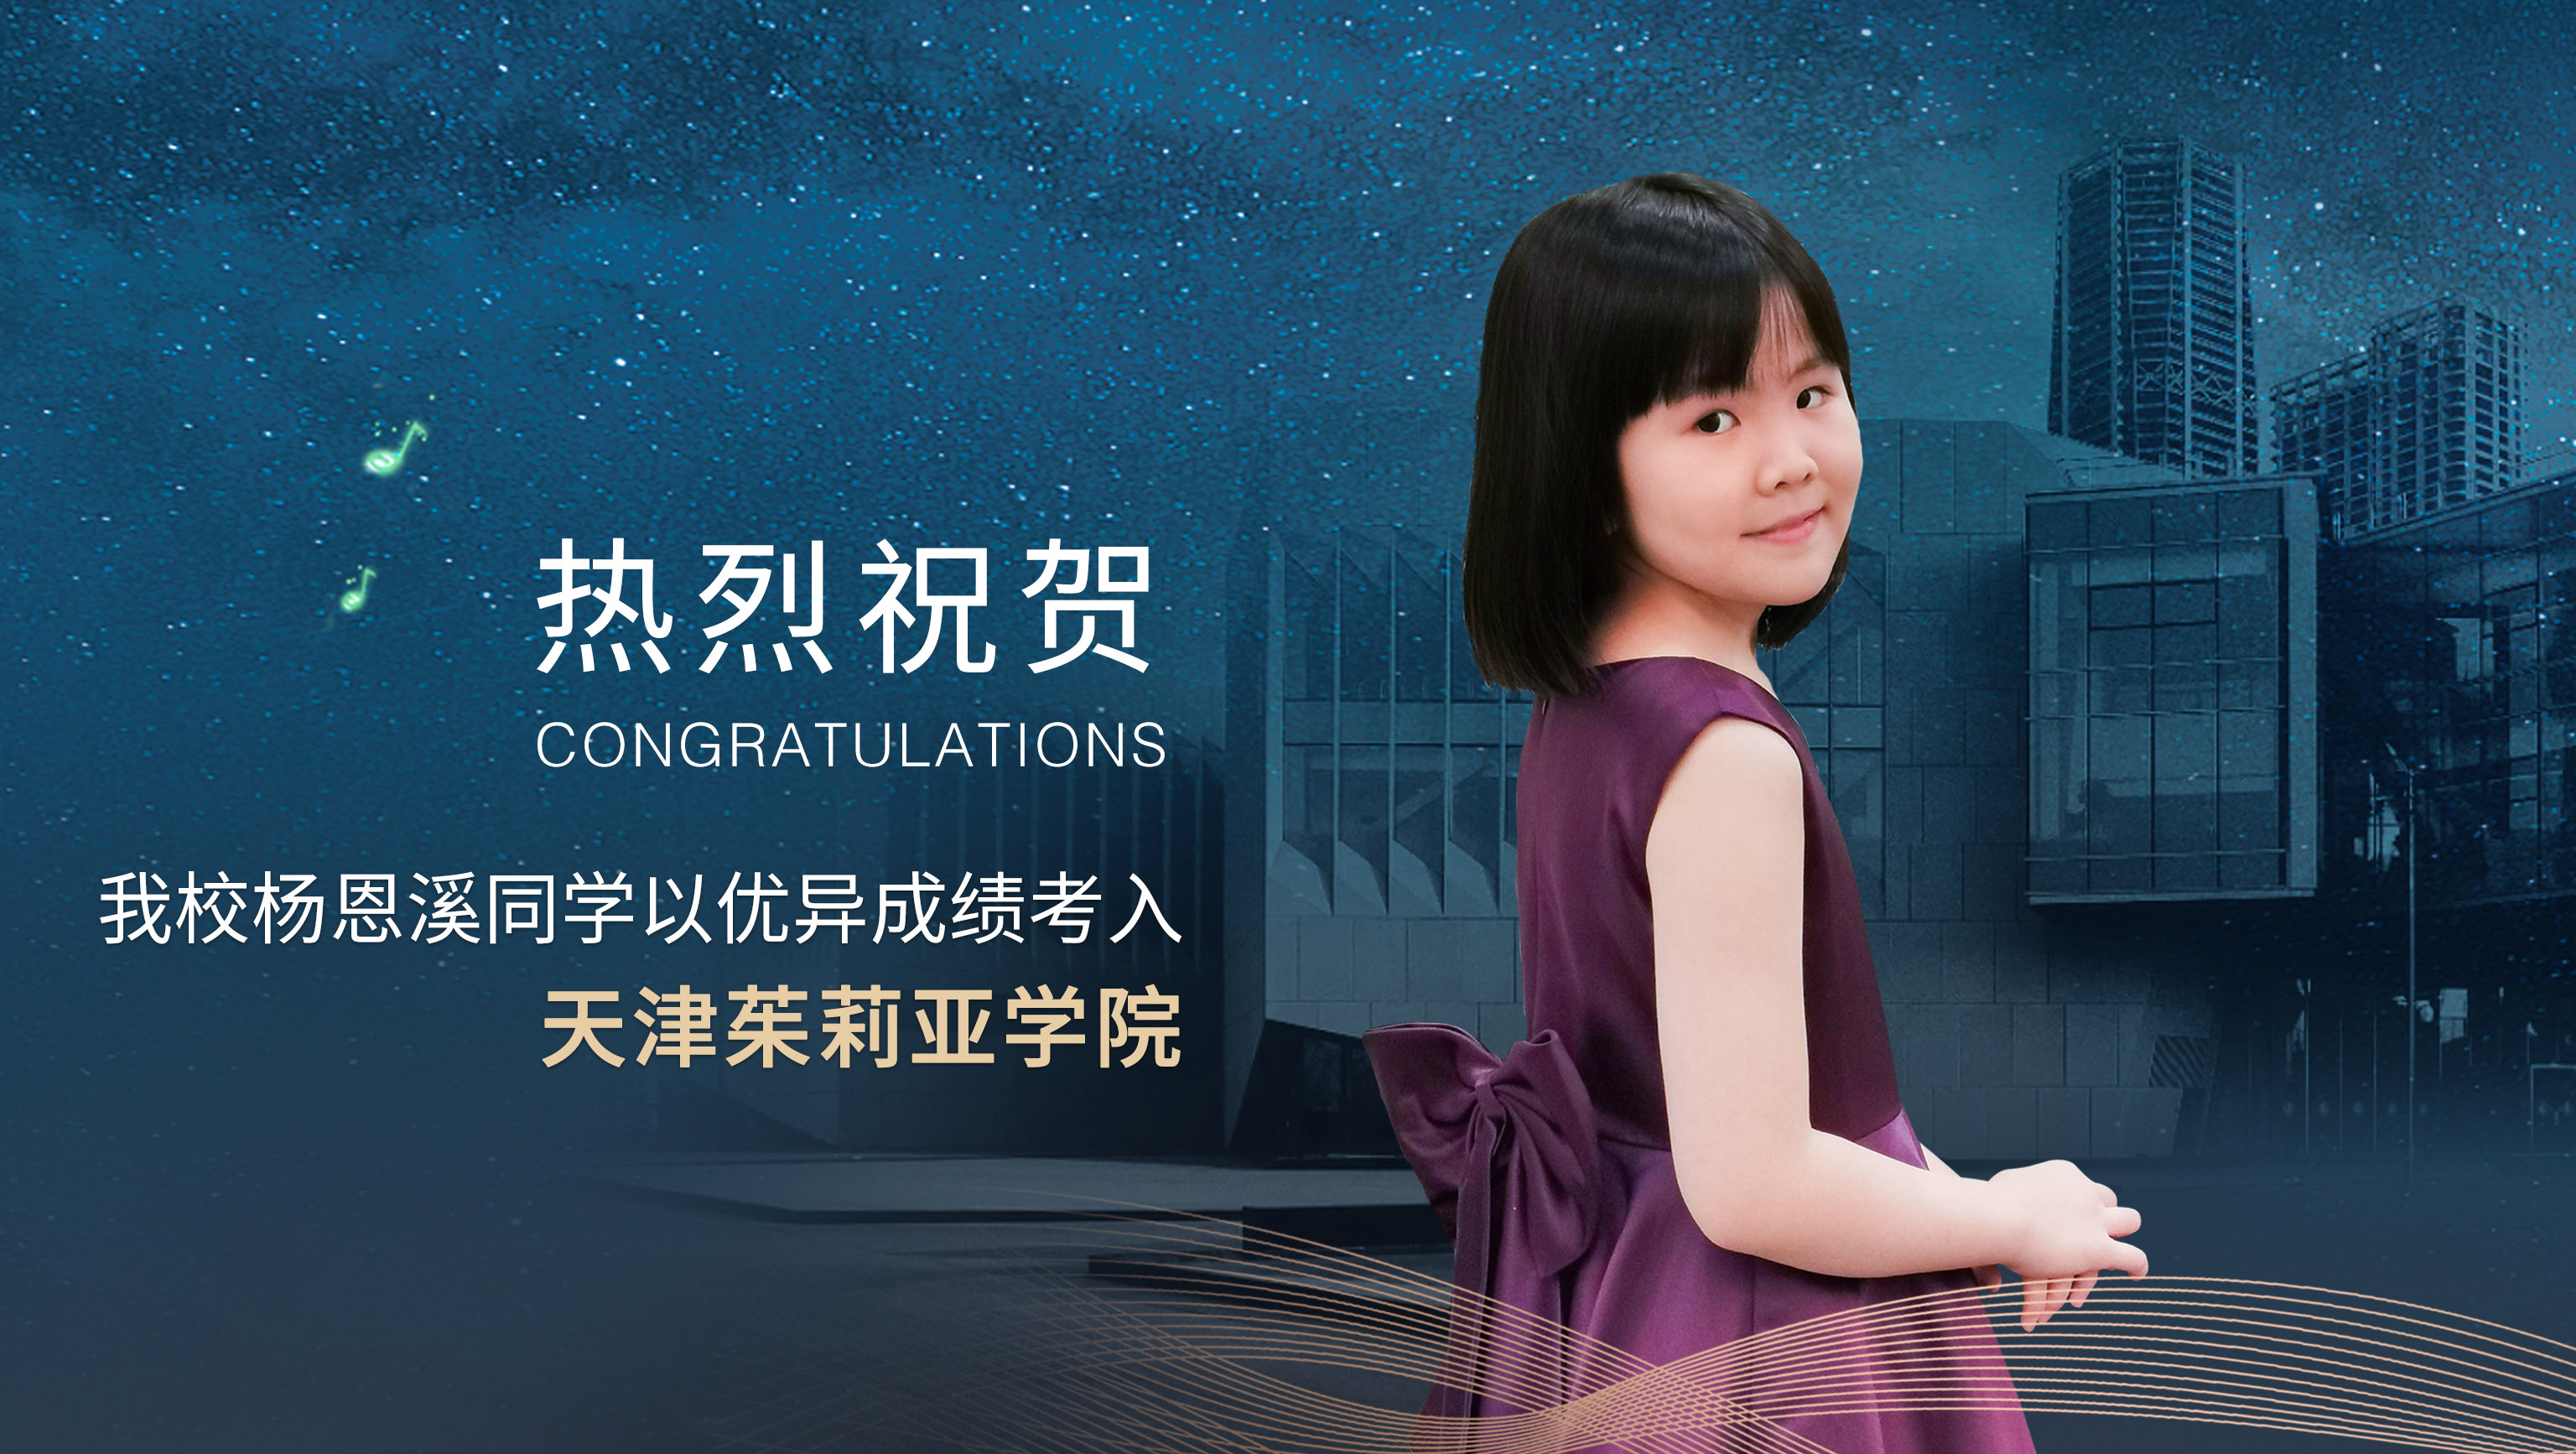 热烈祝贺我校杨恩溪同学以优异成绩考入天津茱莉亚学院